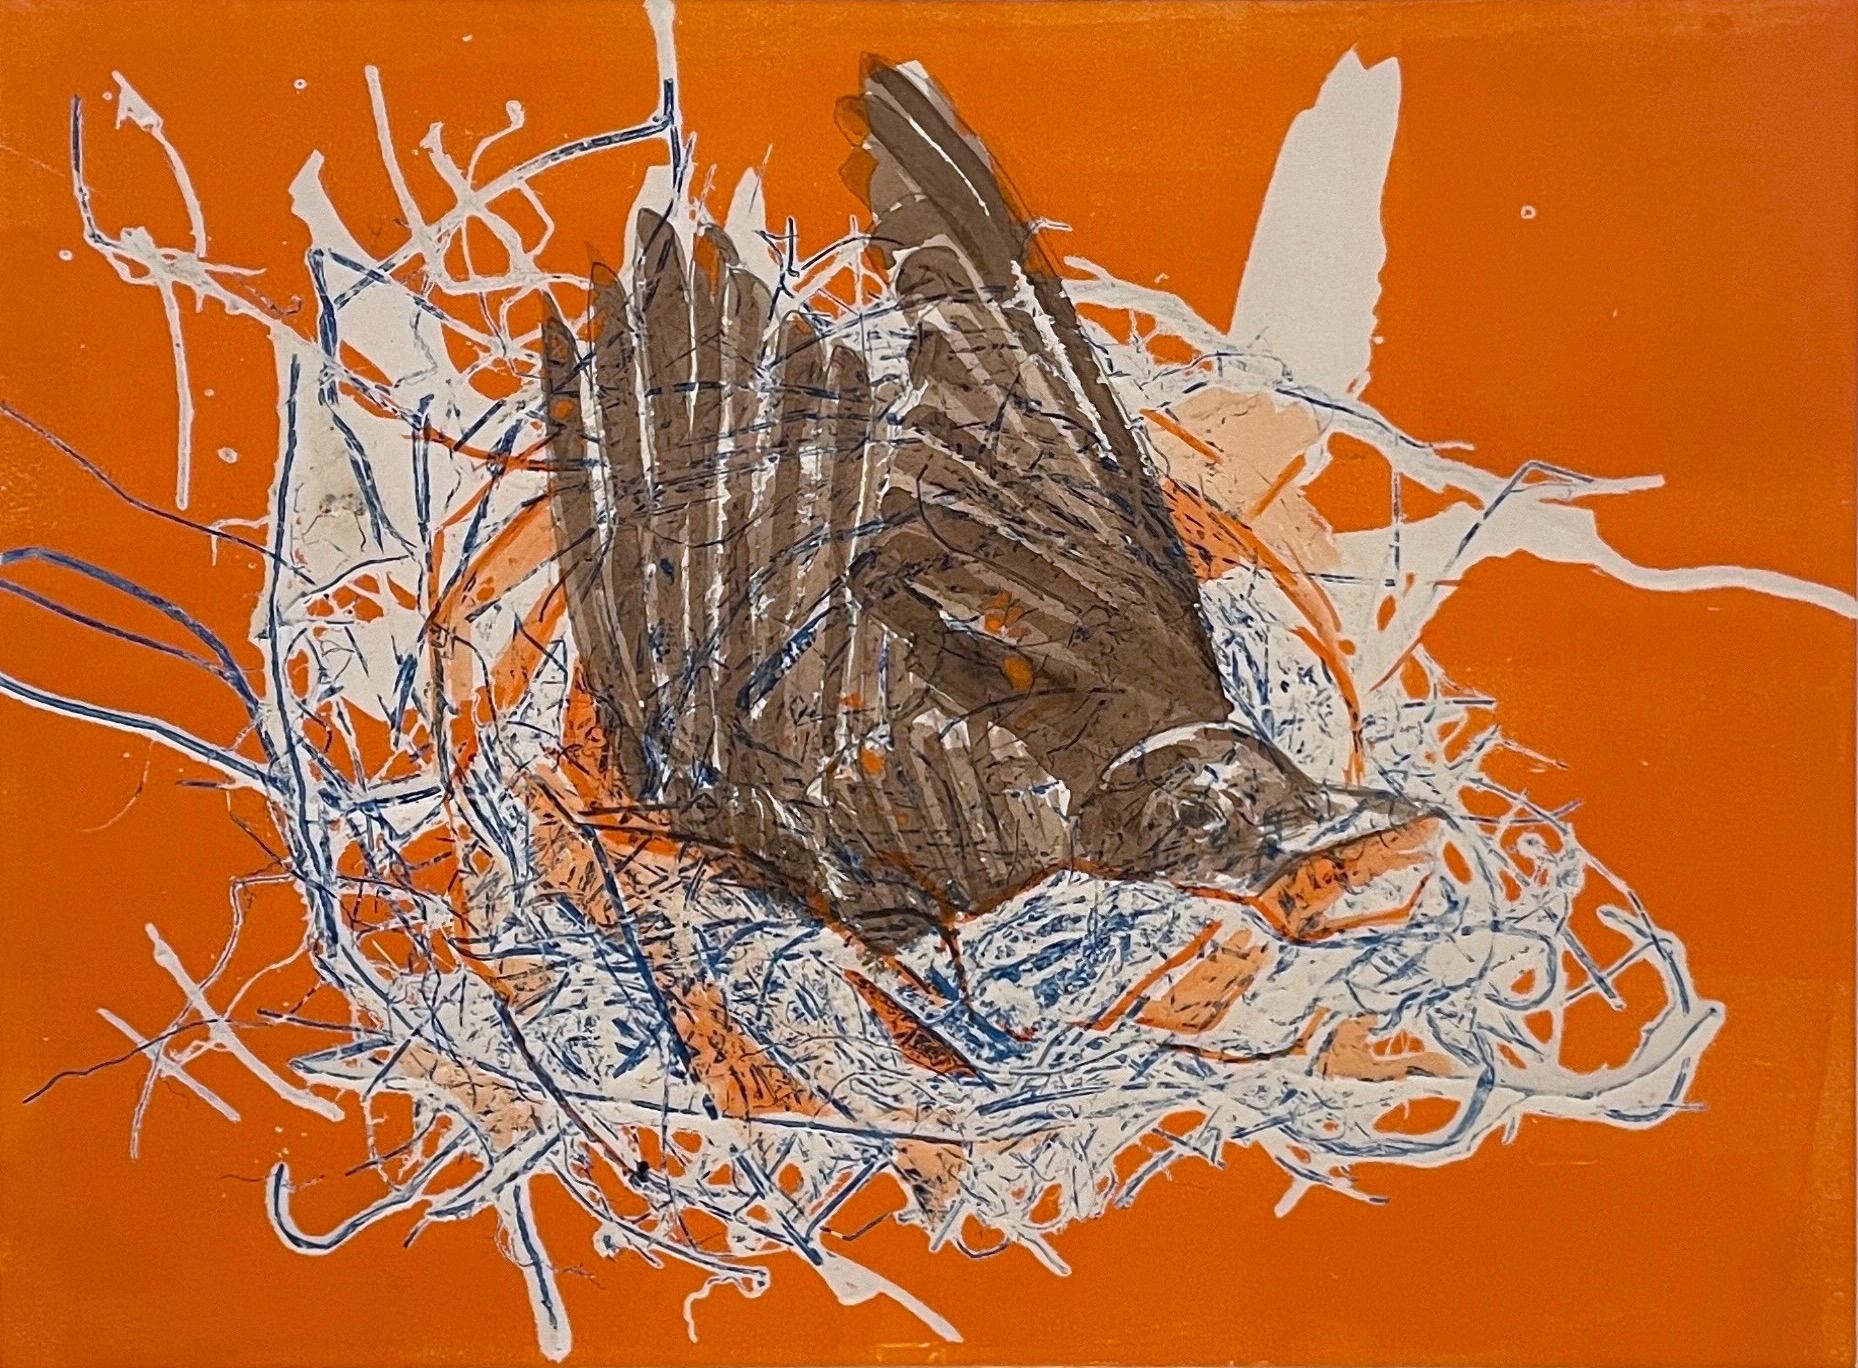 Deirdre Murphy Animal Painting – Preparation: einzigartiges Monoprint-Gemälde eines abstrakten Vogels in einem orangefarbenen Neckholder